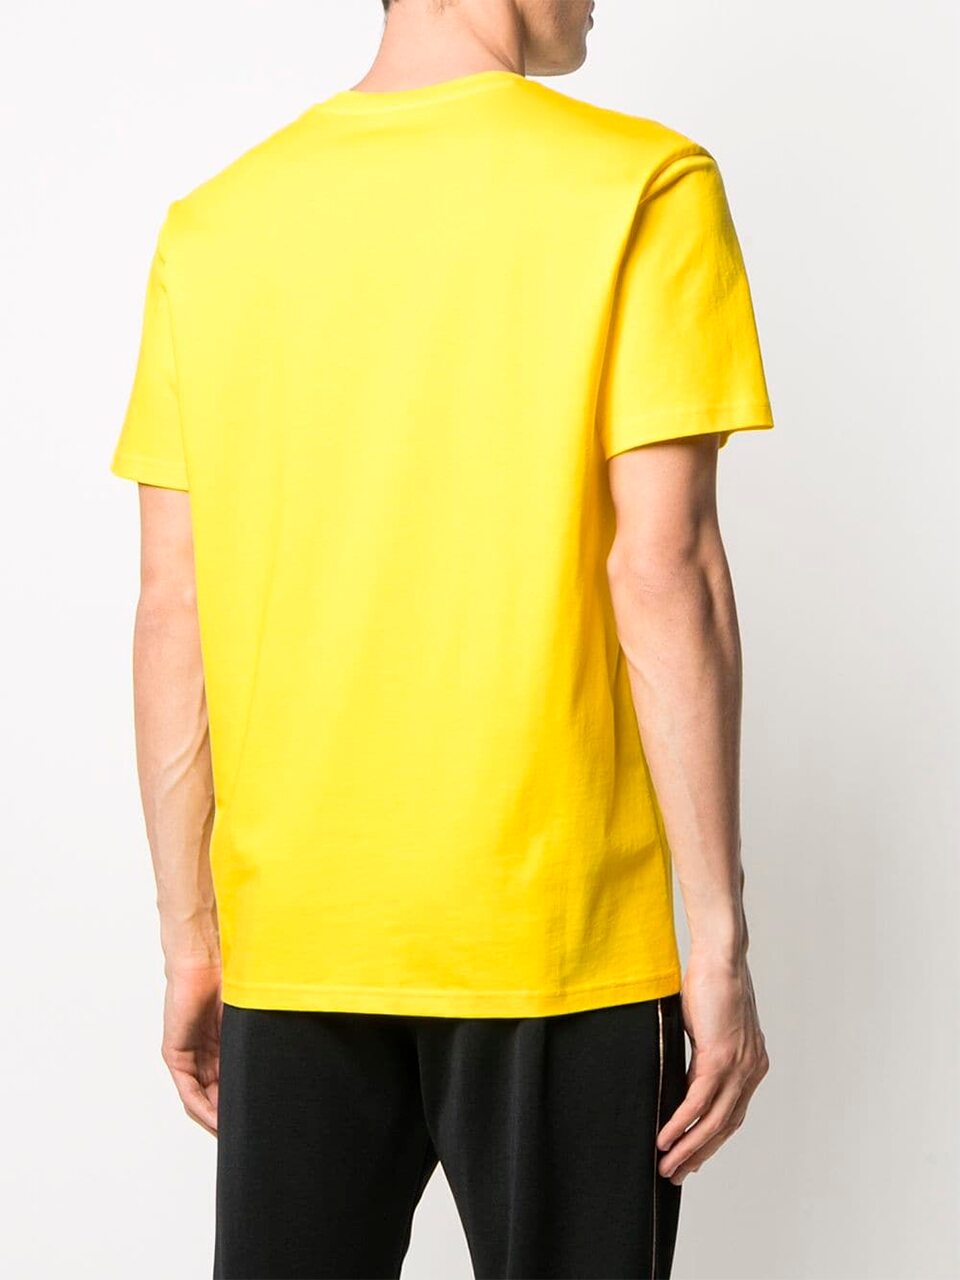 Imagem de: Camiseta Moschino Amarela com Logo Couture Preto